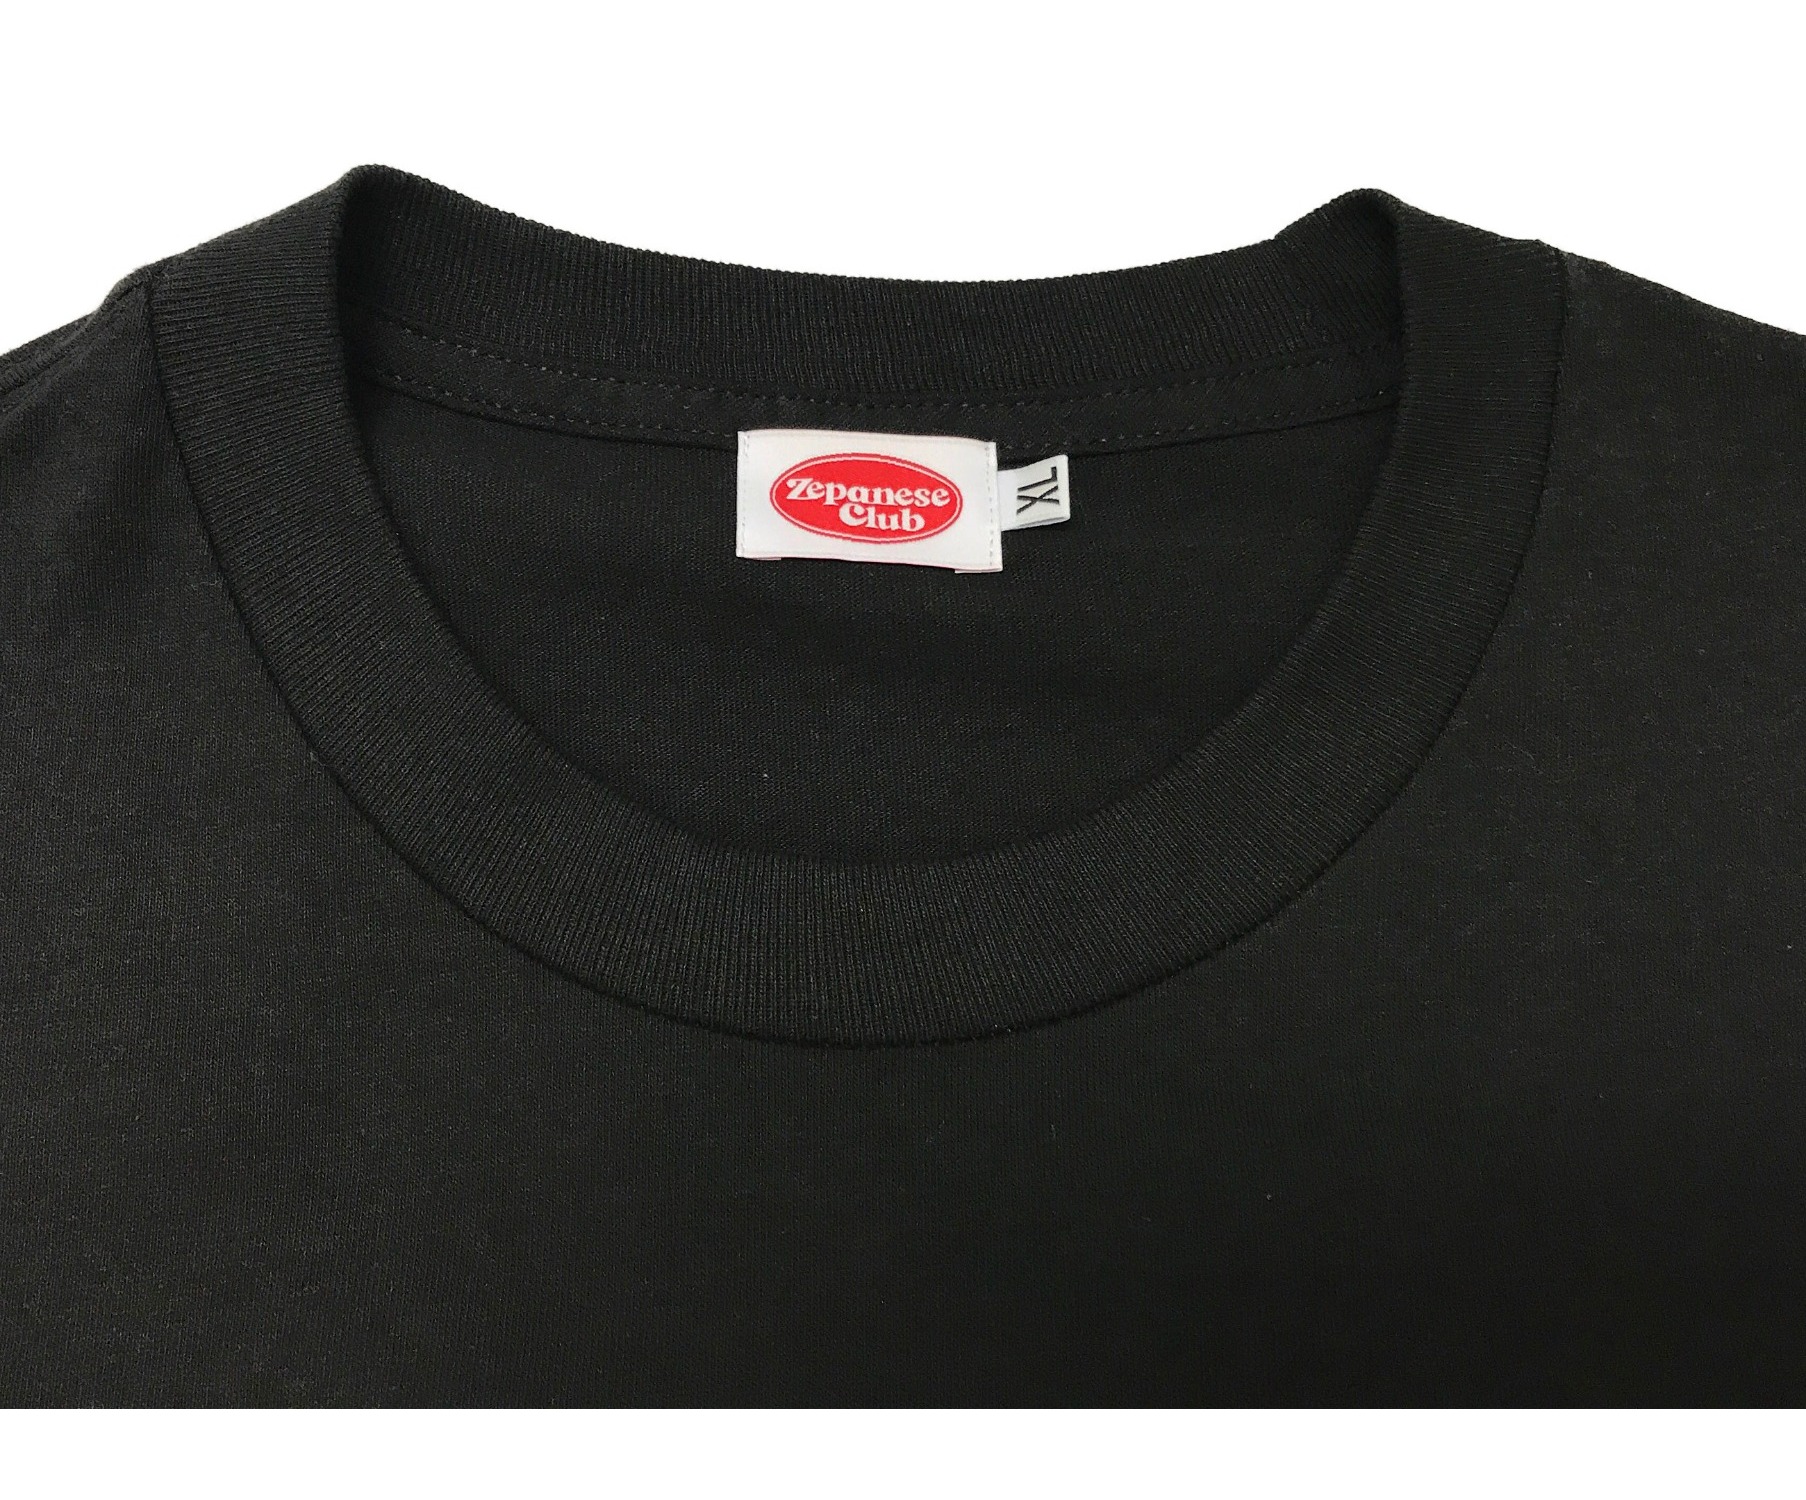 Zepanese Club (ゼパニーズクラブ) ロゴプリントTシャツ ブラック サイズ:XL